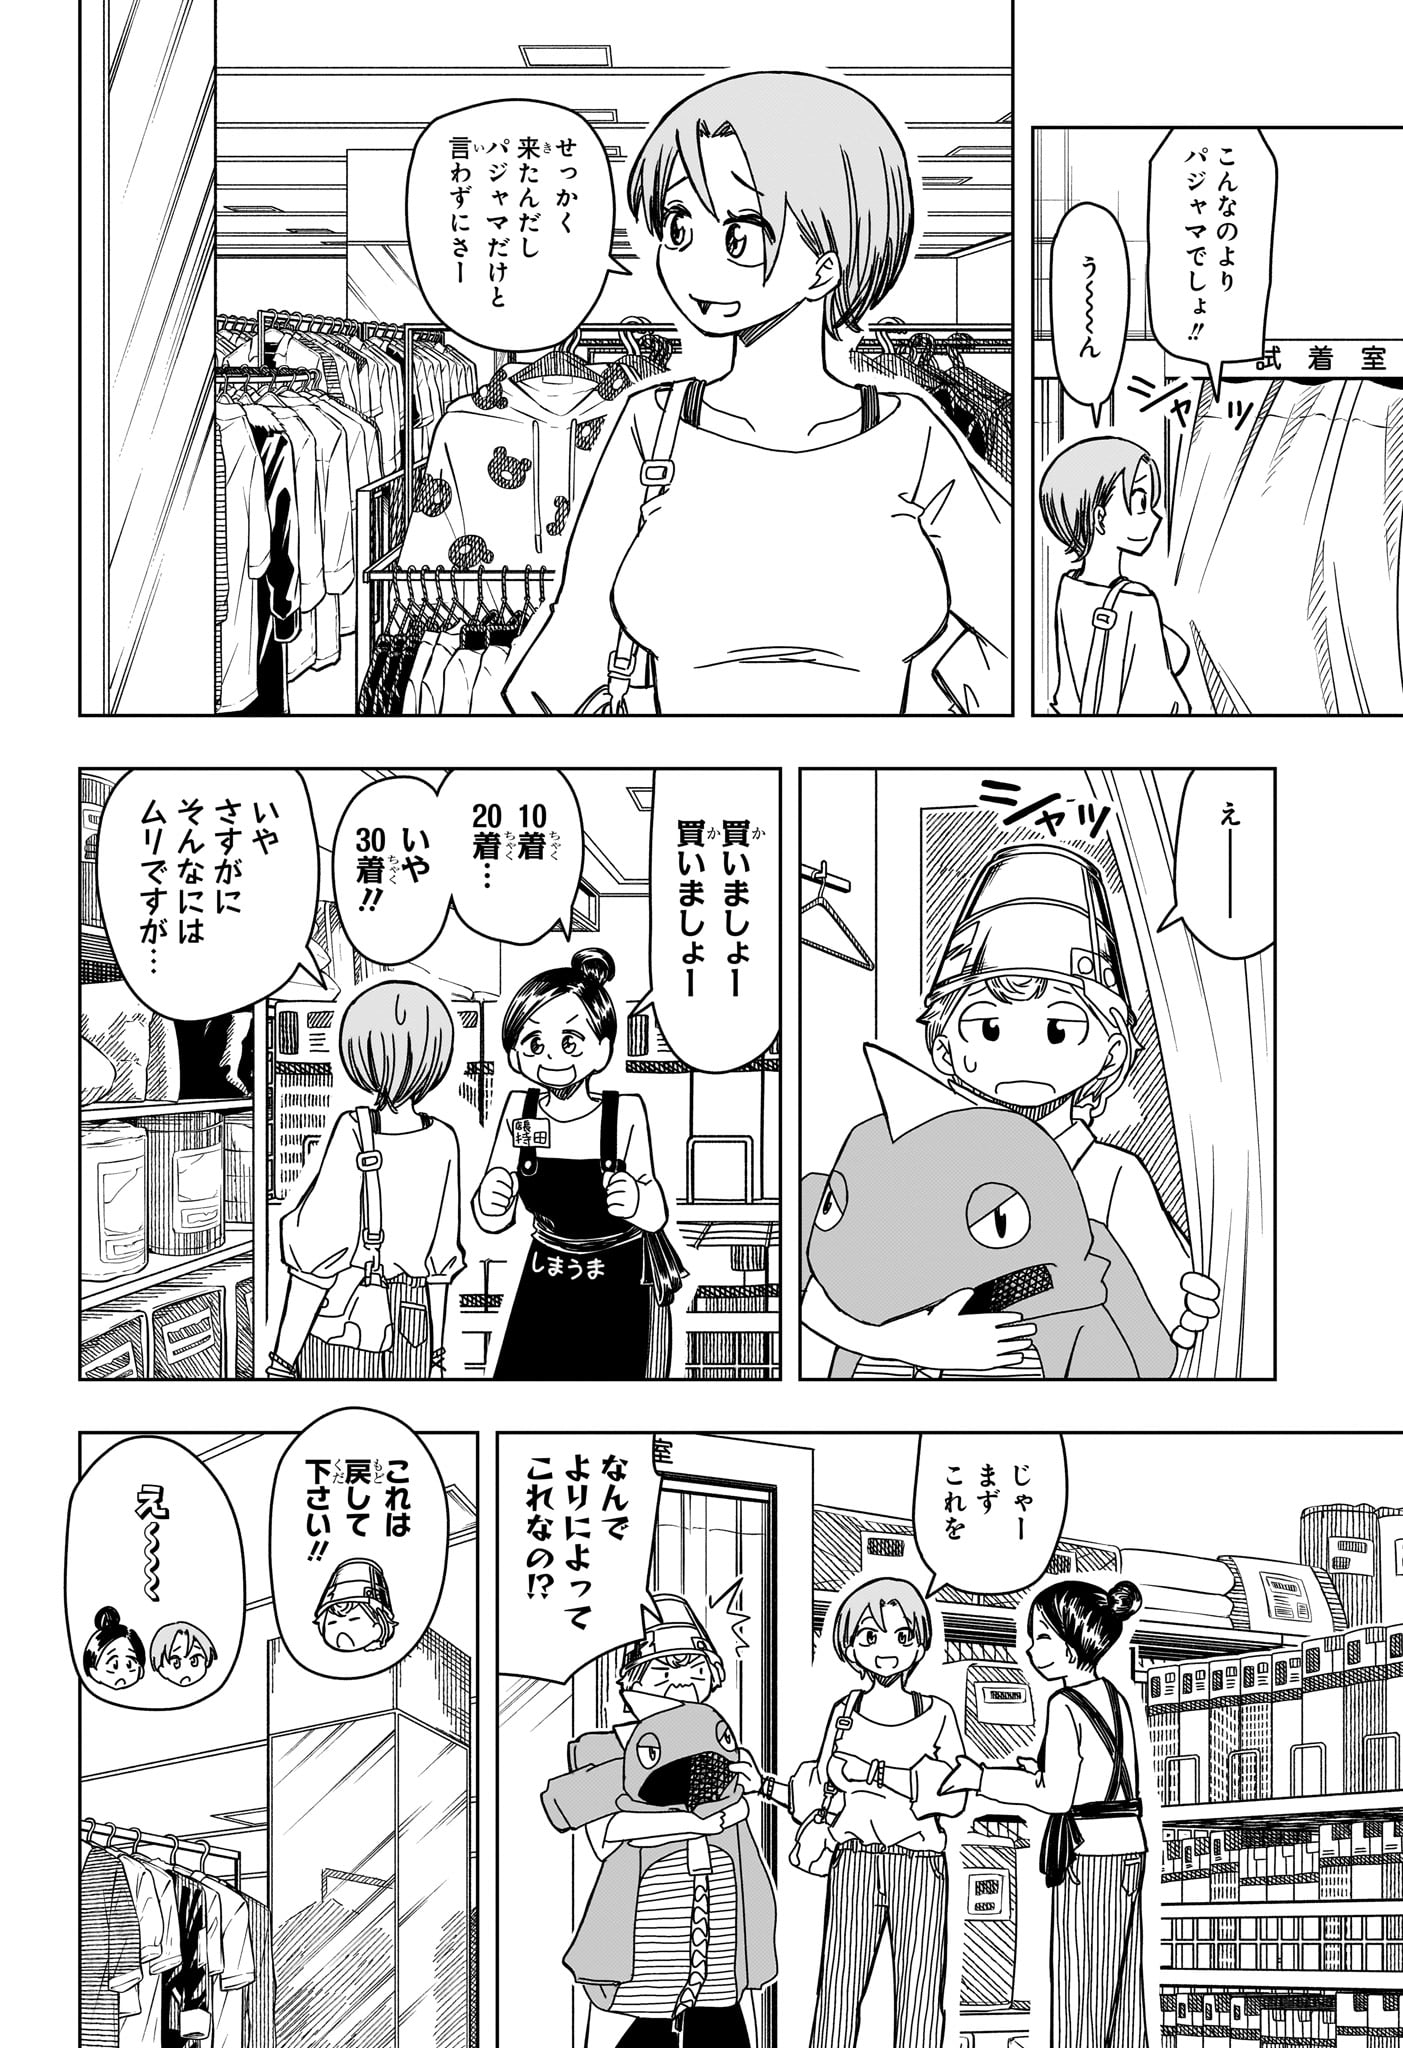 Saikuru Biyori - Chapter 5 - Page 8